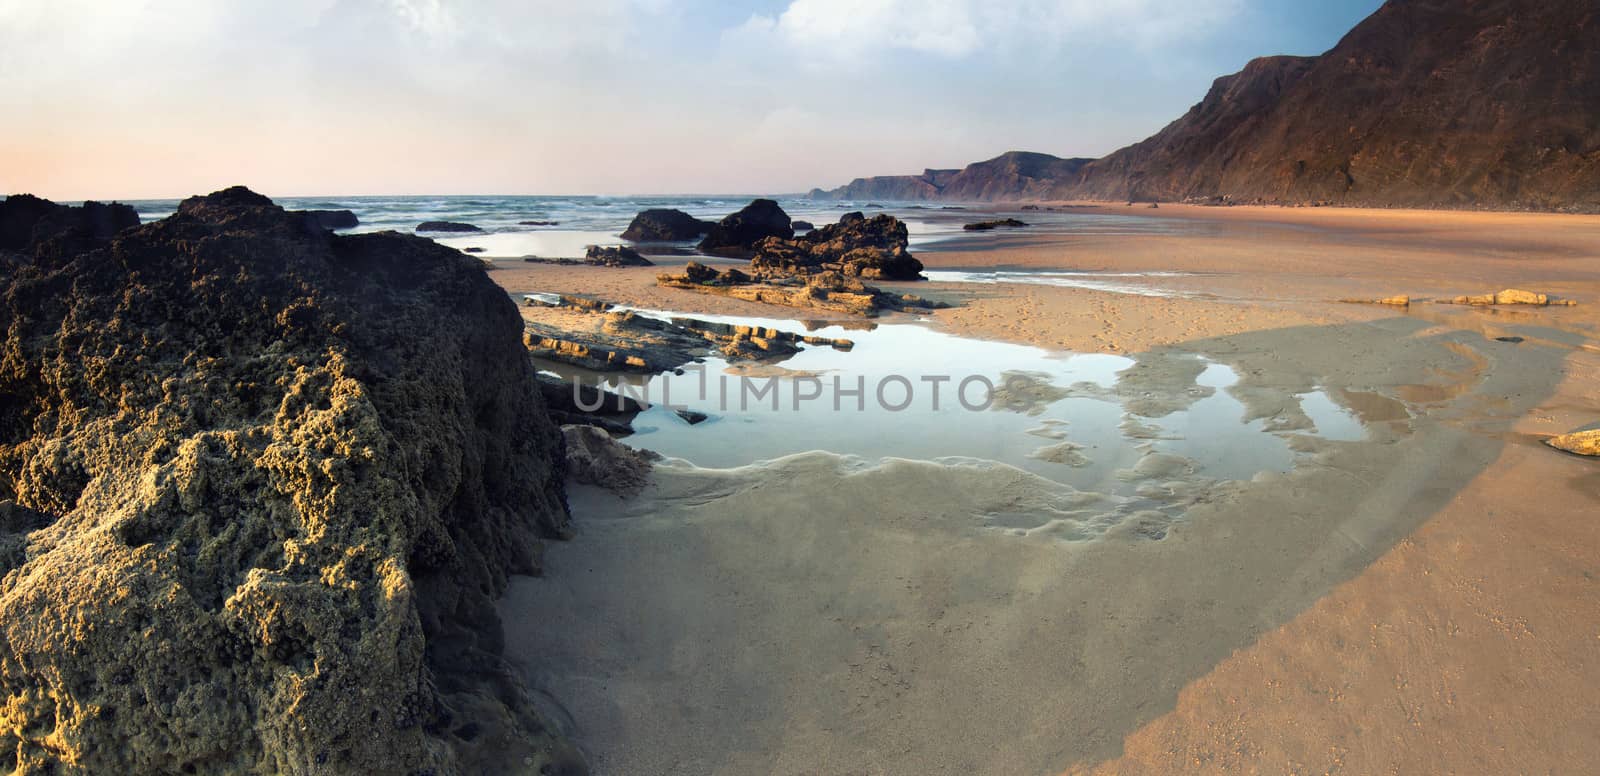 coastline area of Sagres, Portugal by membio